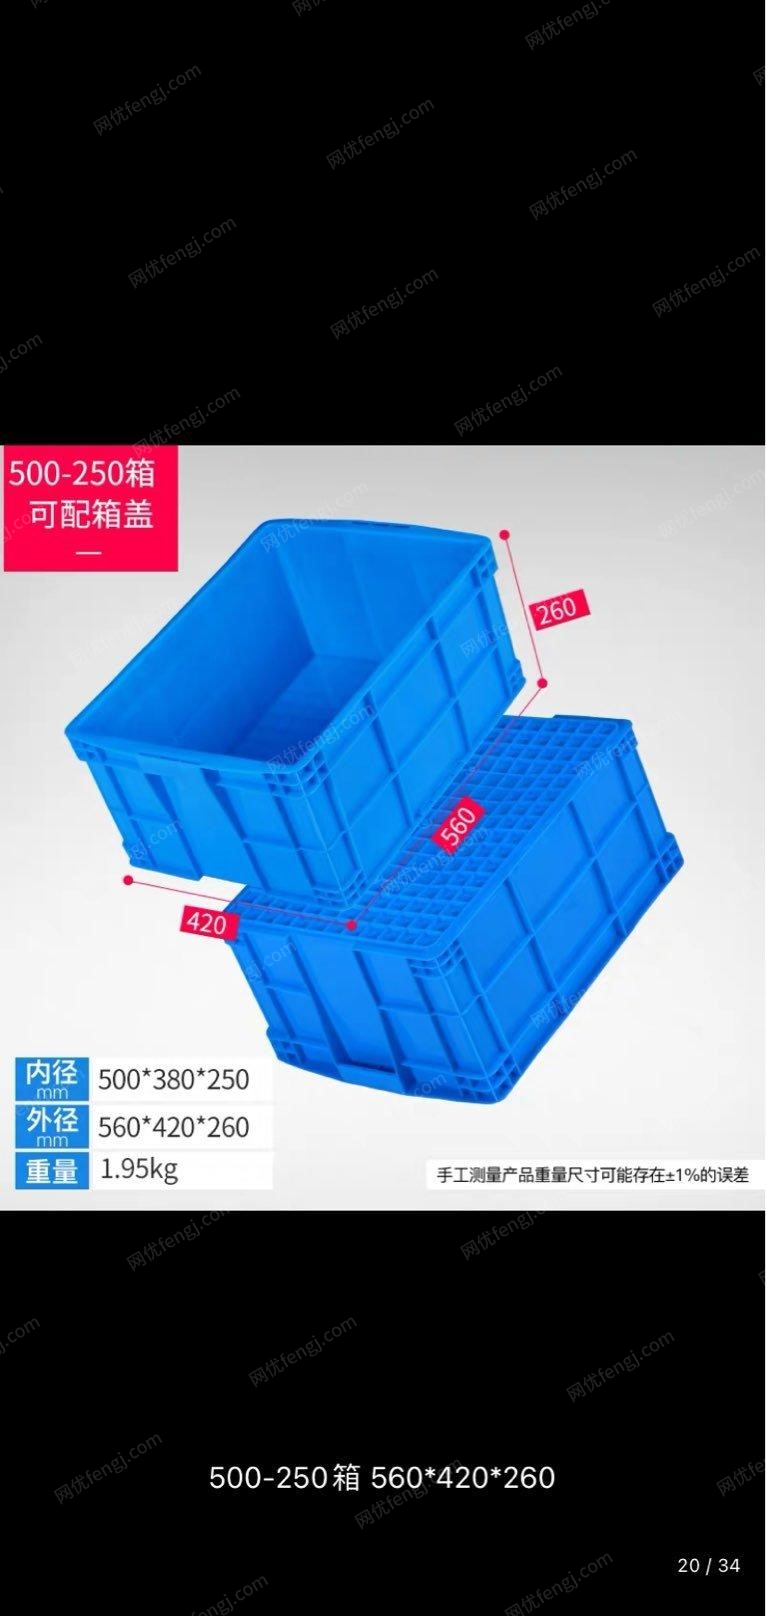 江苏常州出售闲置塑料周转箱1000多个，长560宽410高260,塑料托盘200个